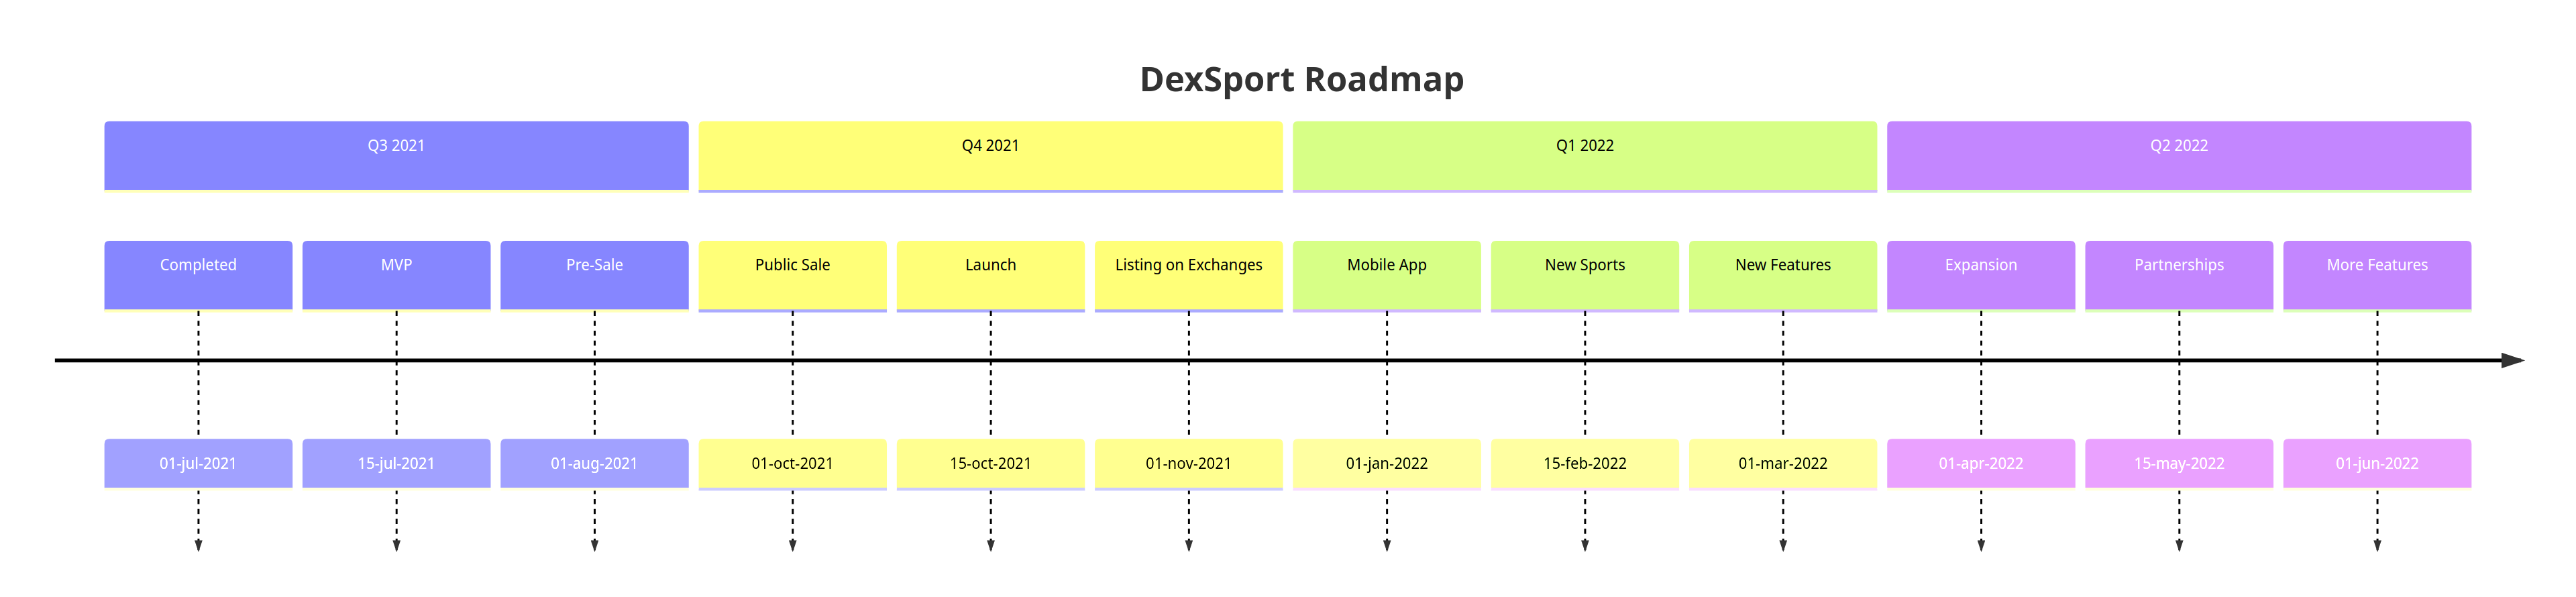 DexSport Roadmap